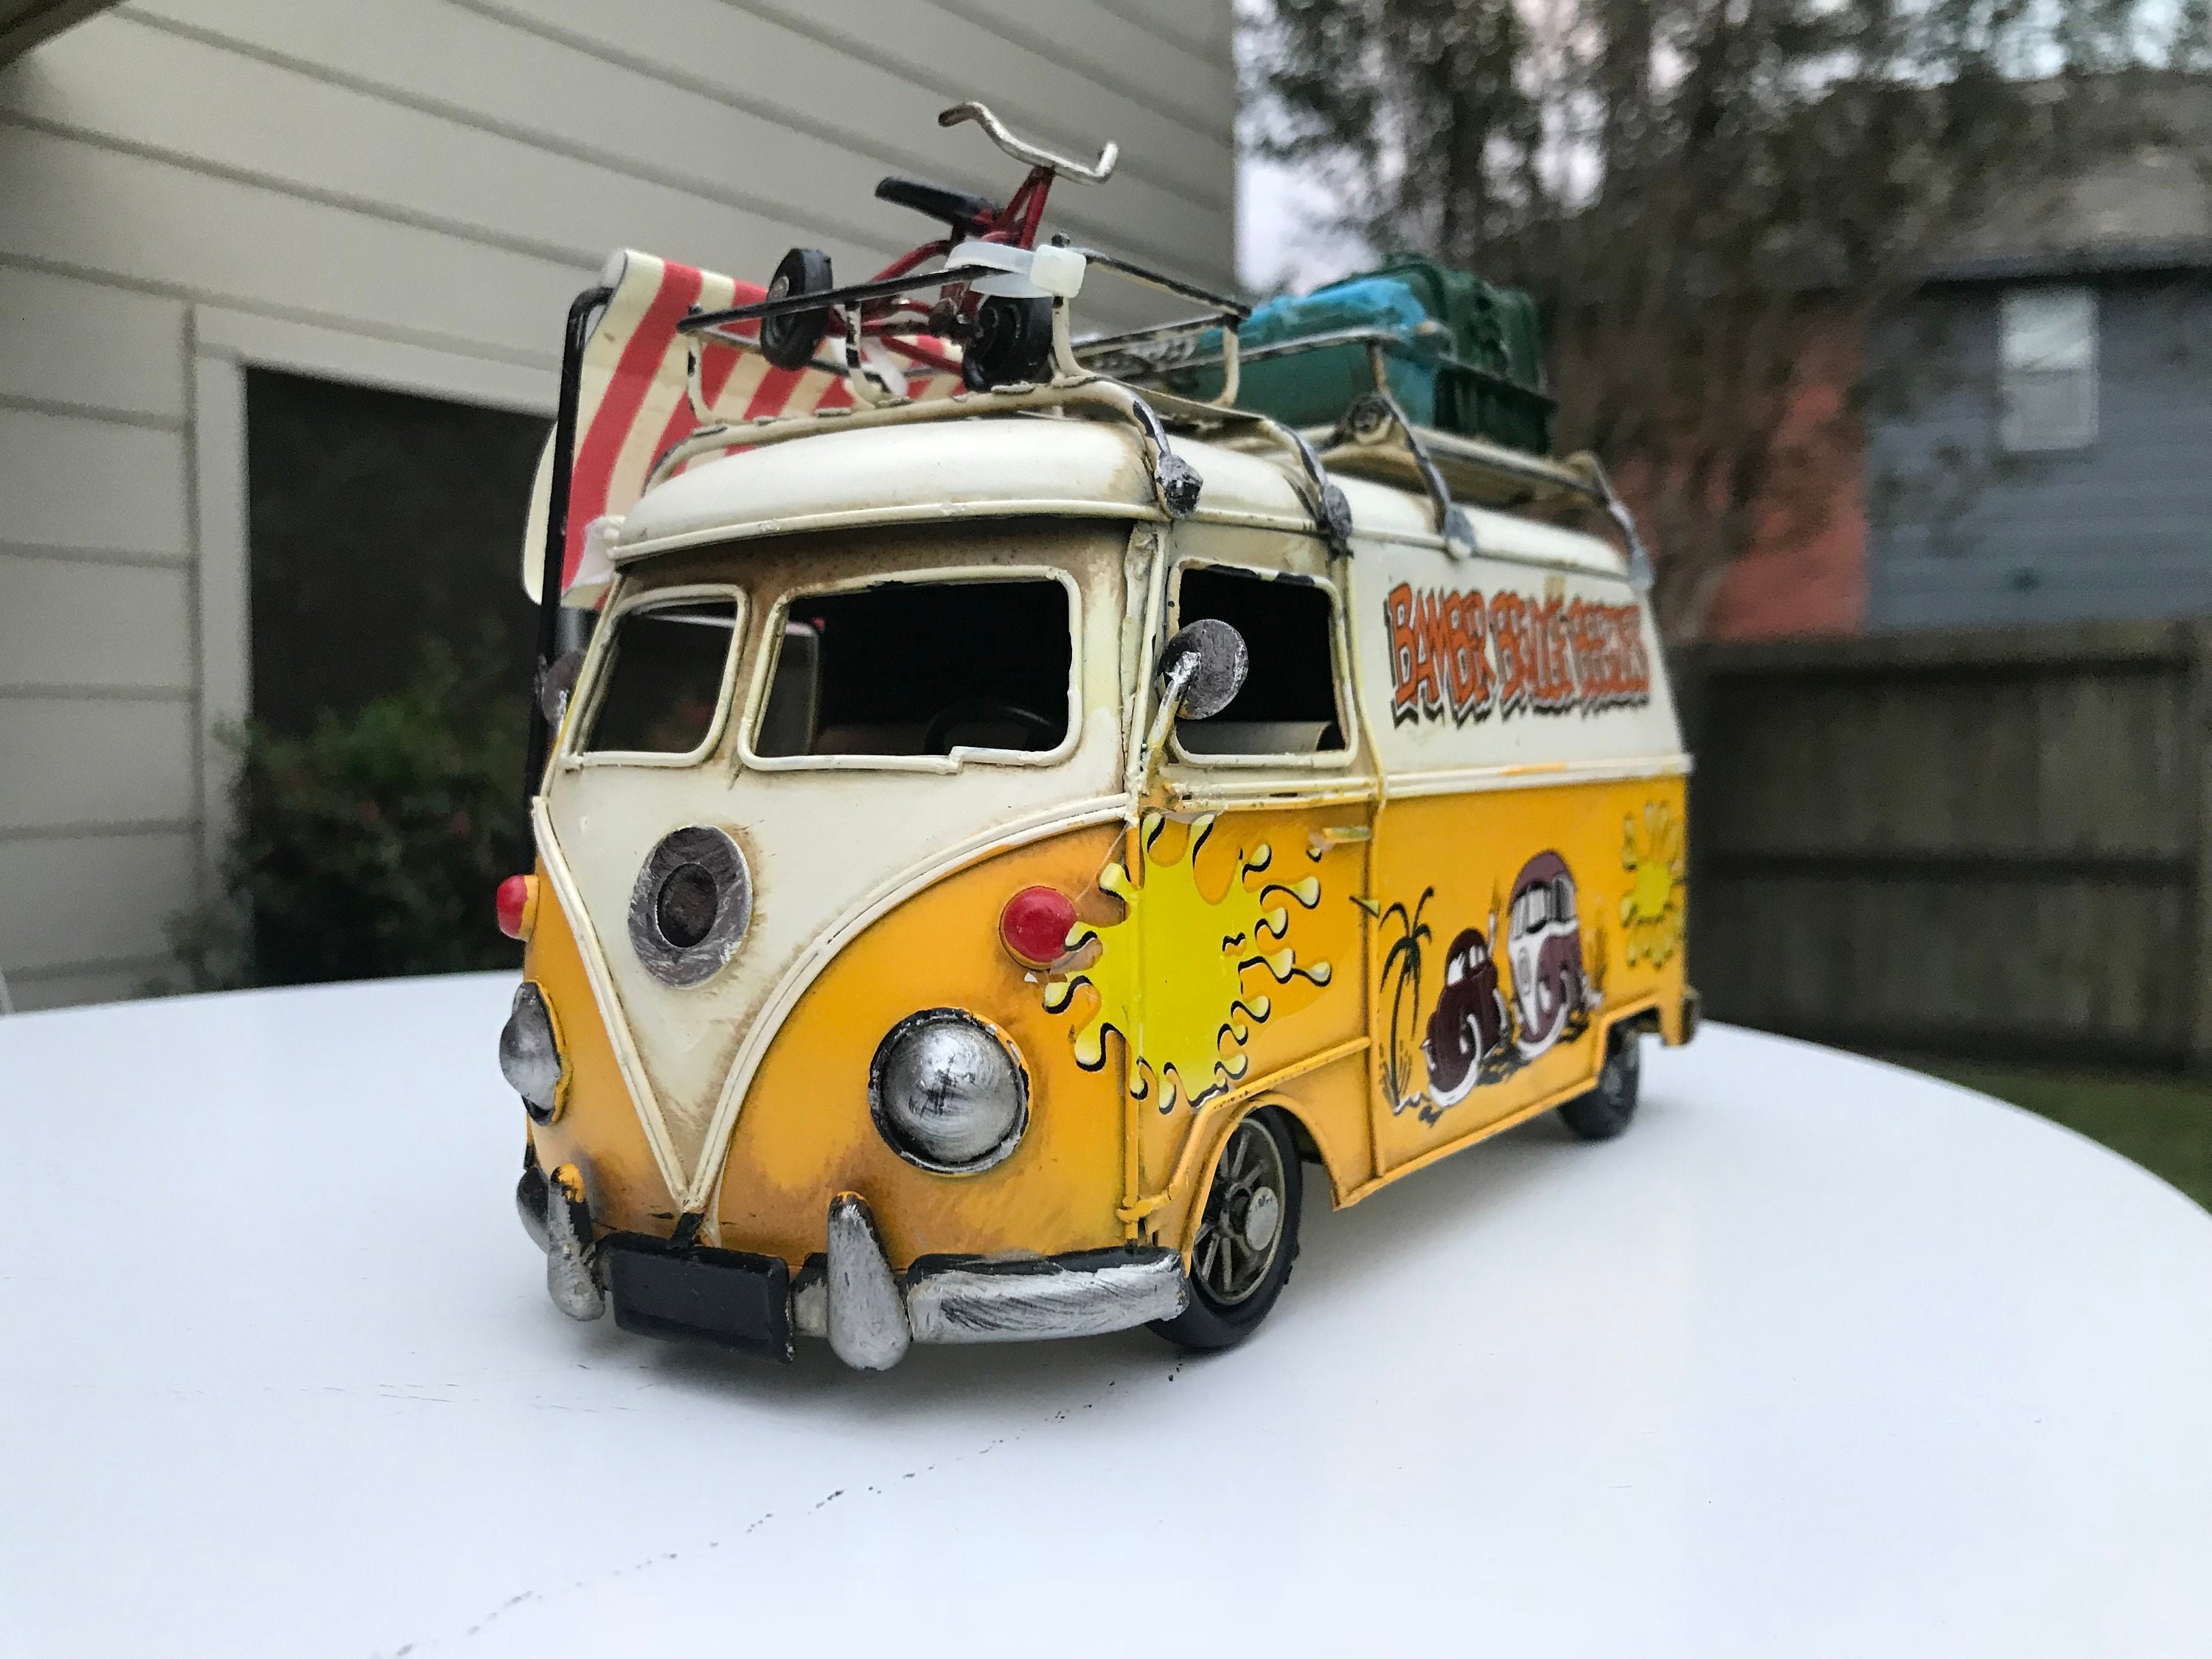 Vintage VW gele 8 inch camper van-Volkswagen miniatuur | Etsy